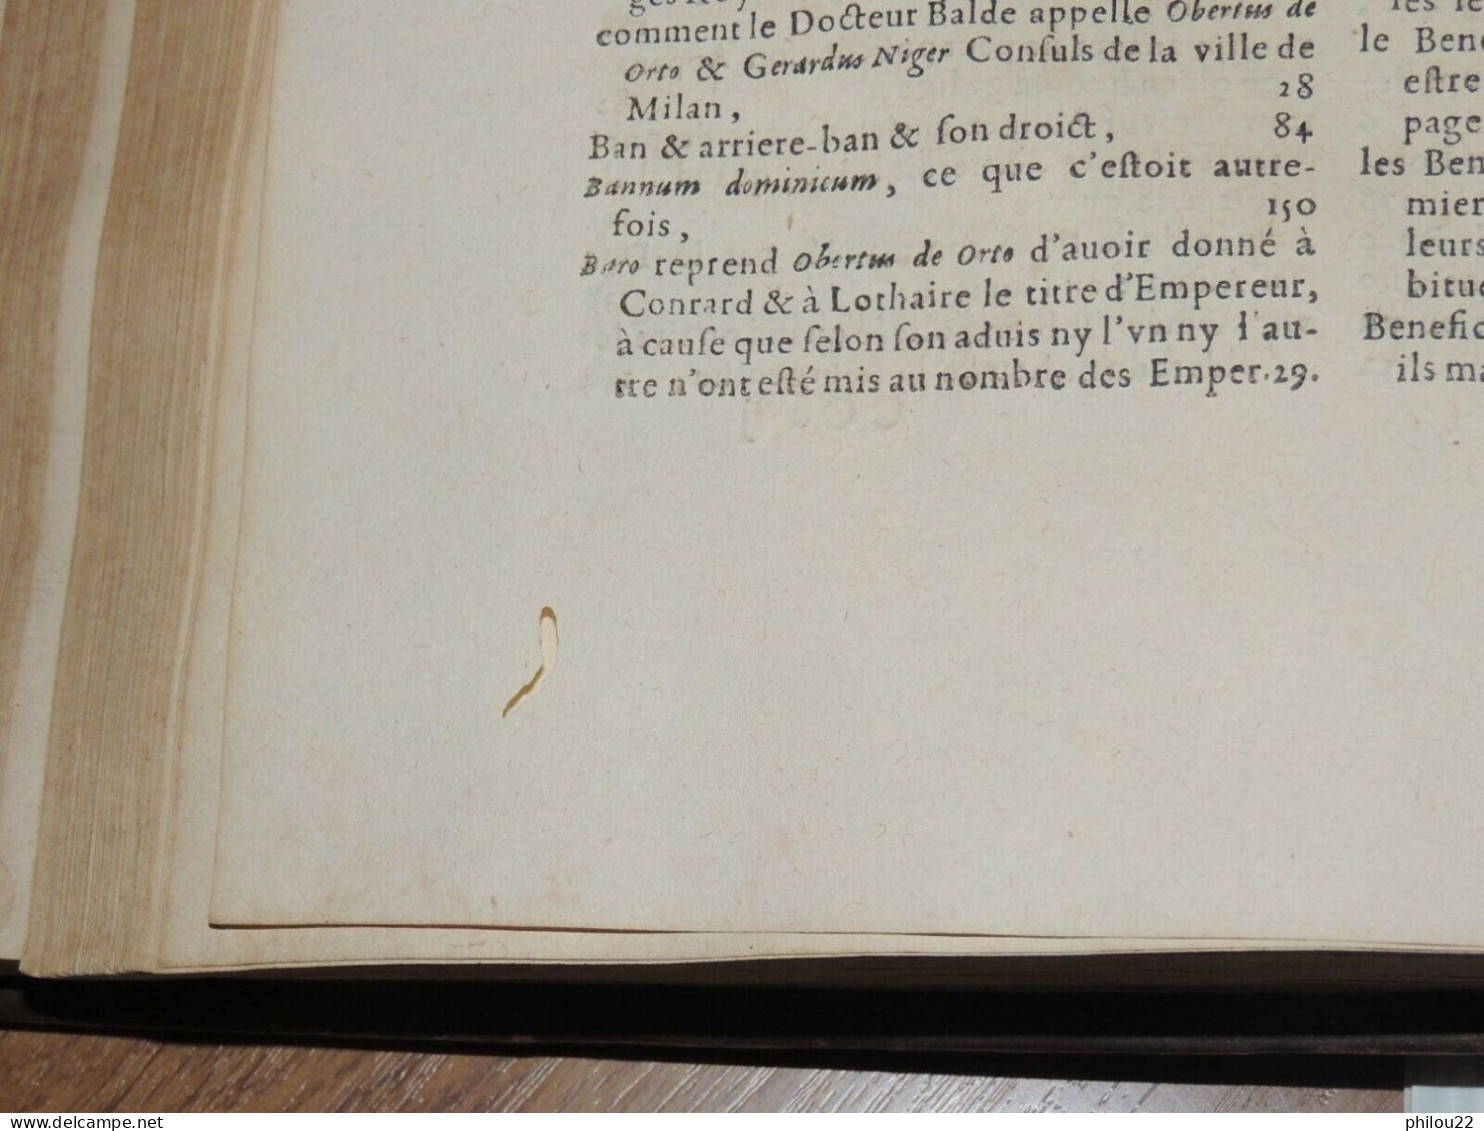 CHANTEREAU LE FEBVRE - Traité des fiefs et de leur origine... In-folio 1662 E.O.